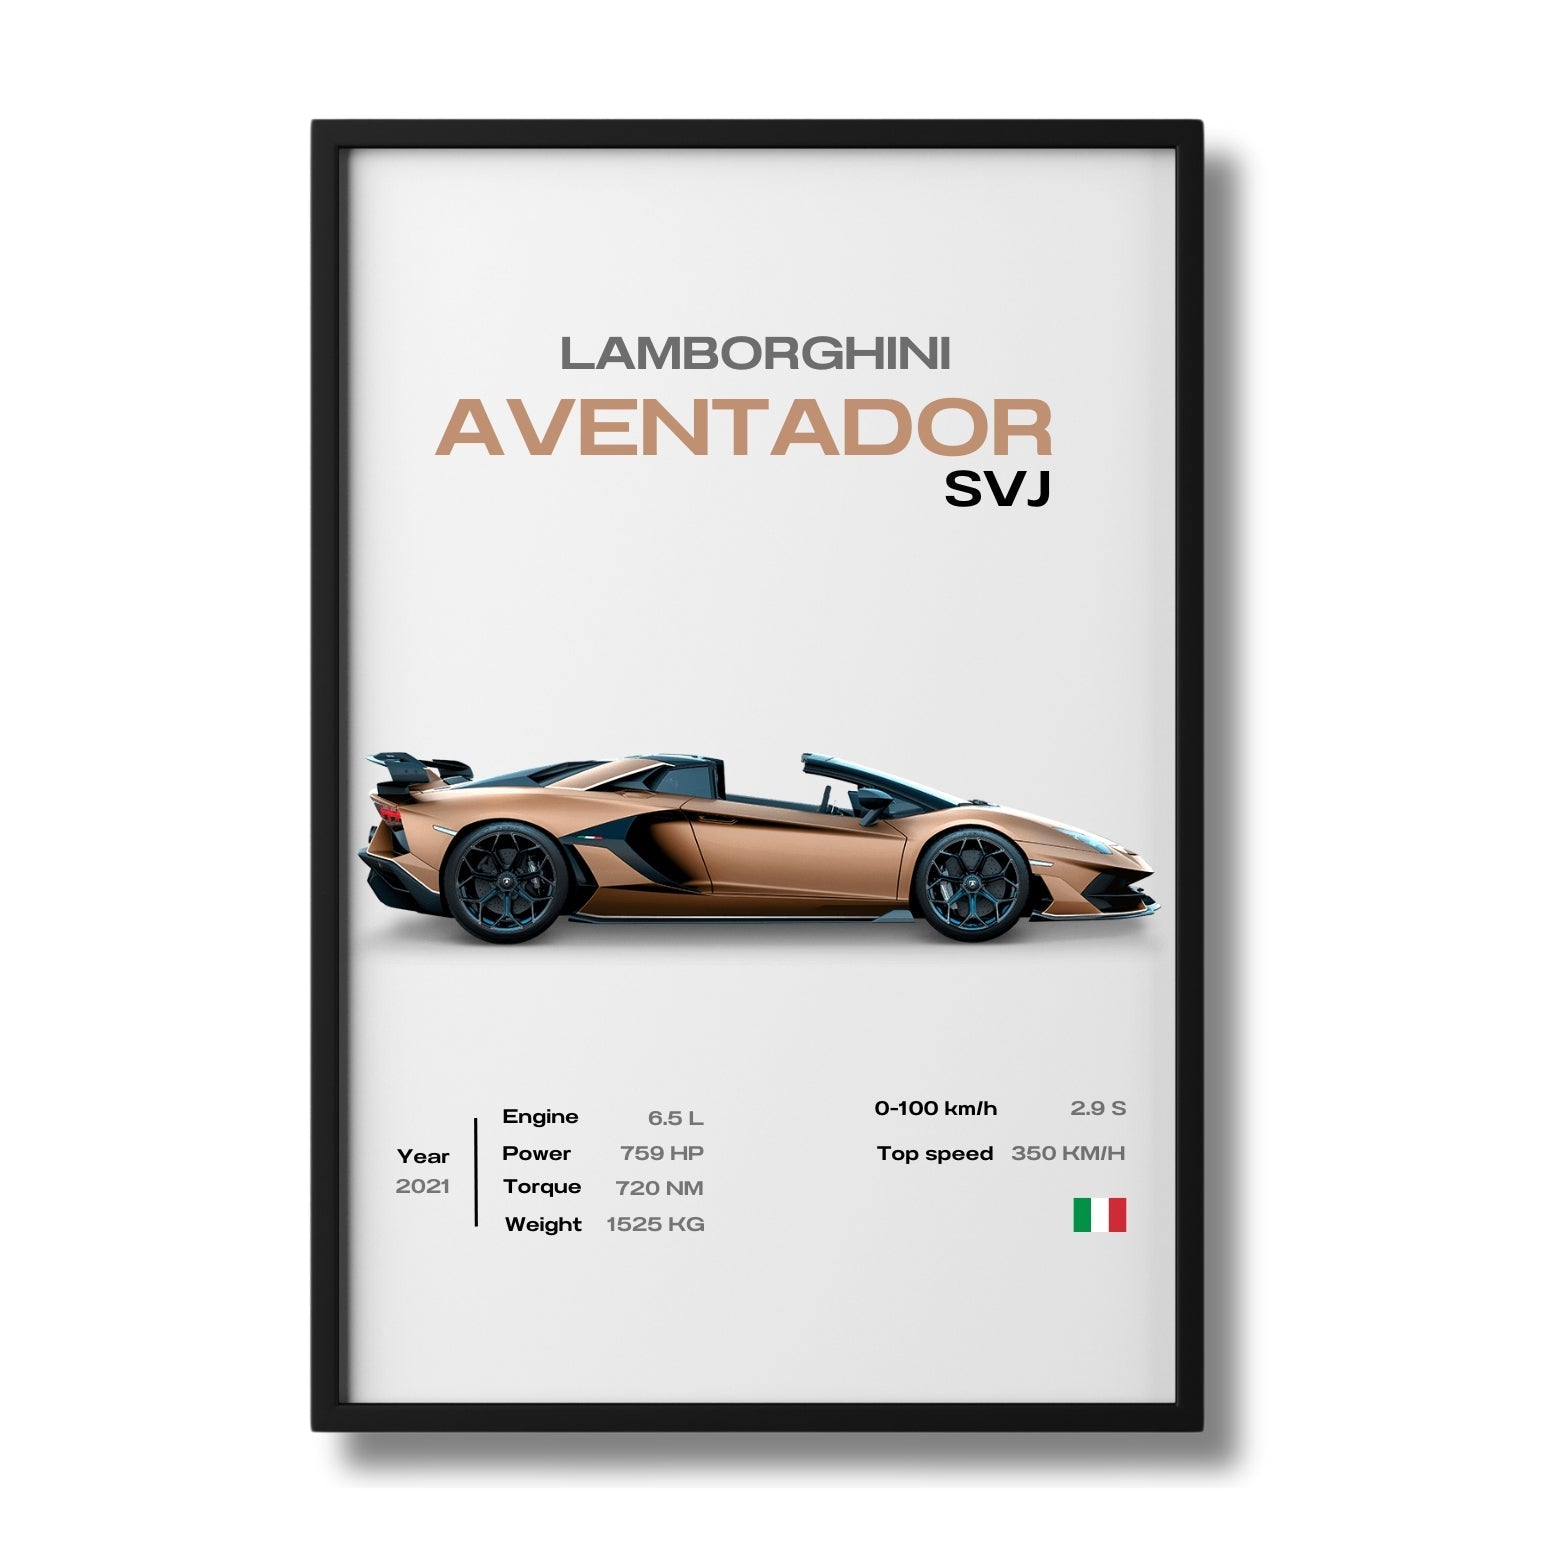 Lamborghini - Digital File Pack X10